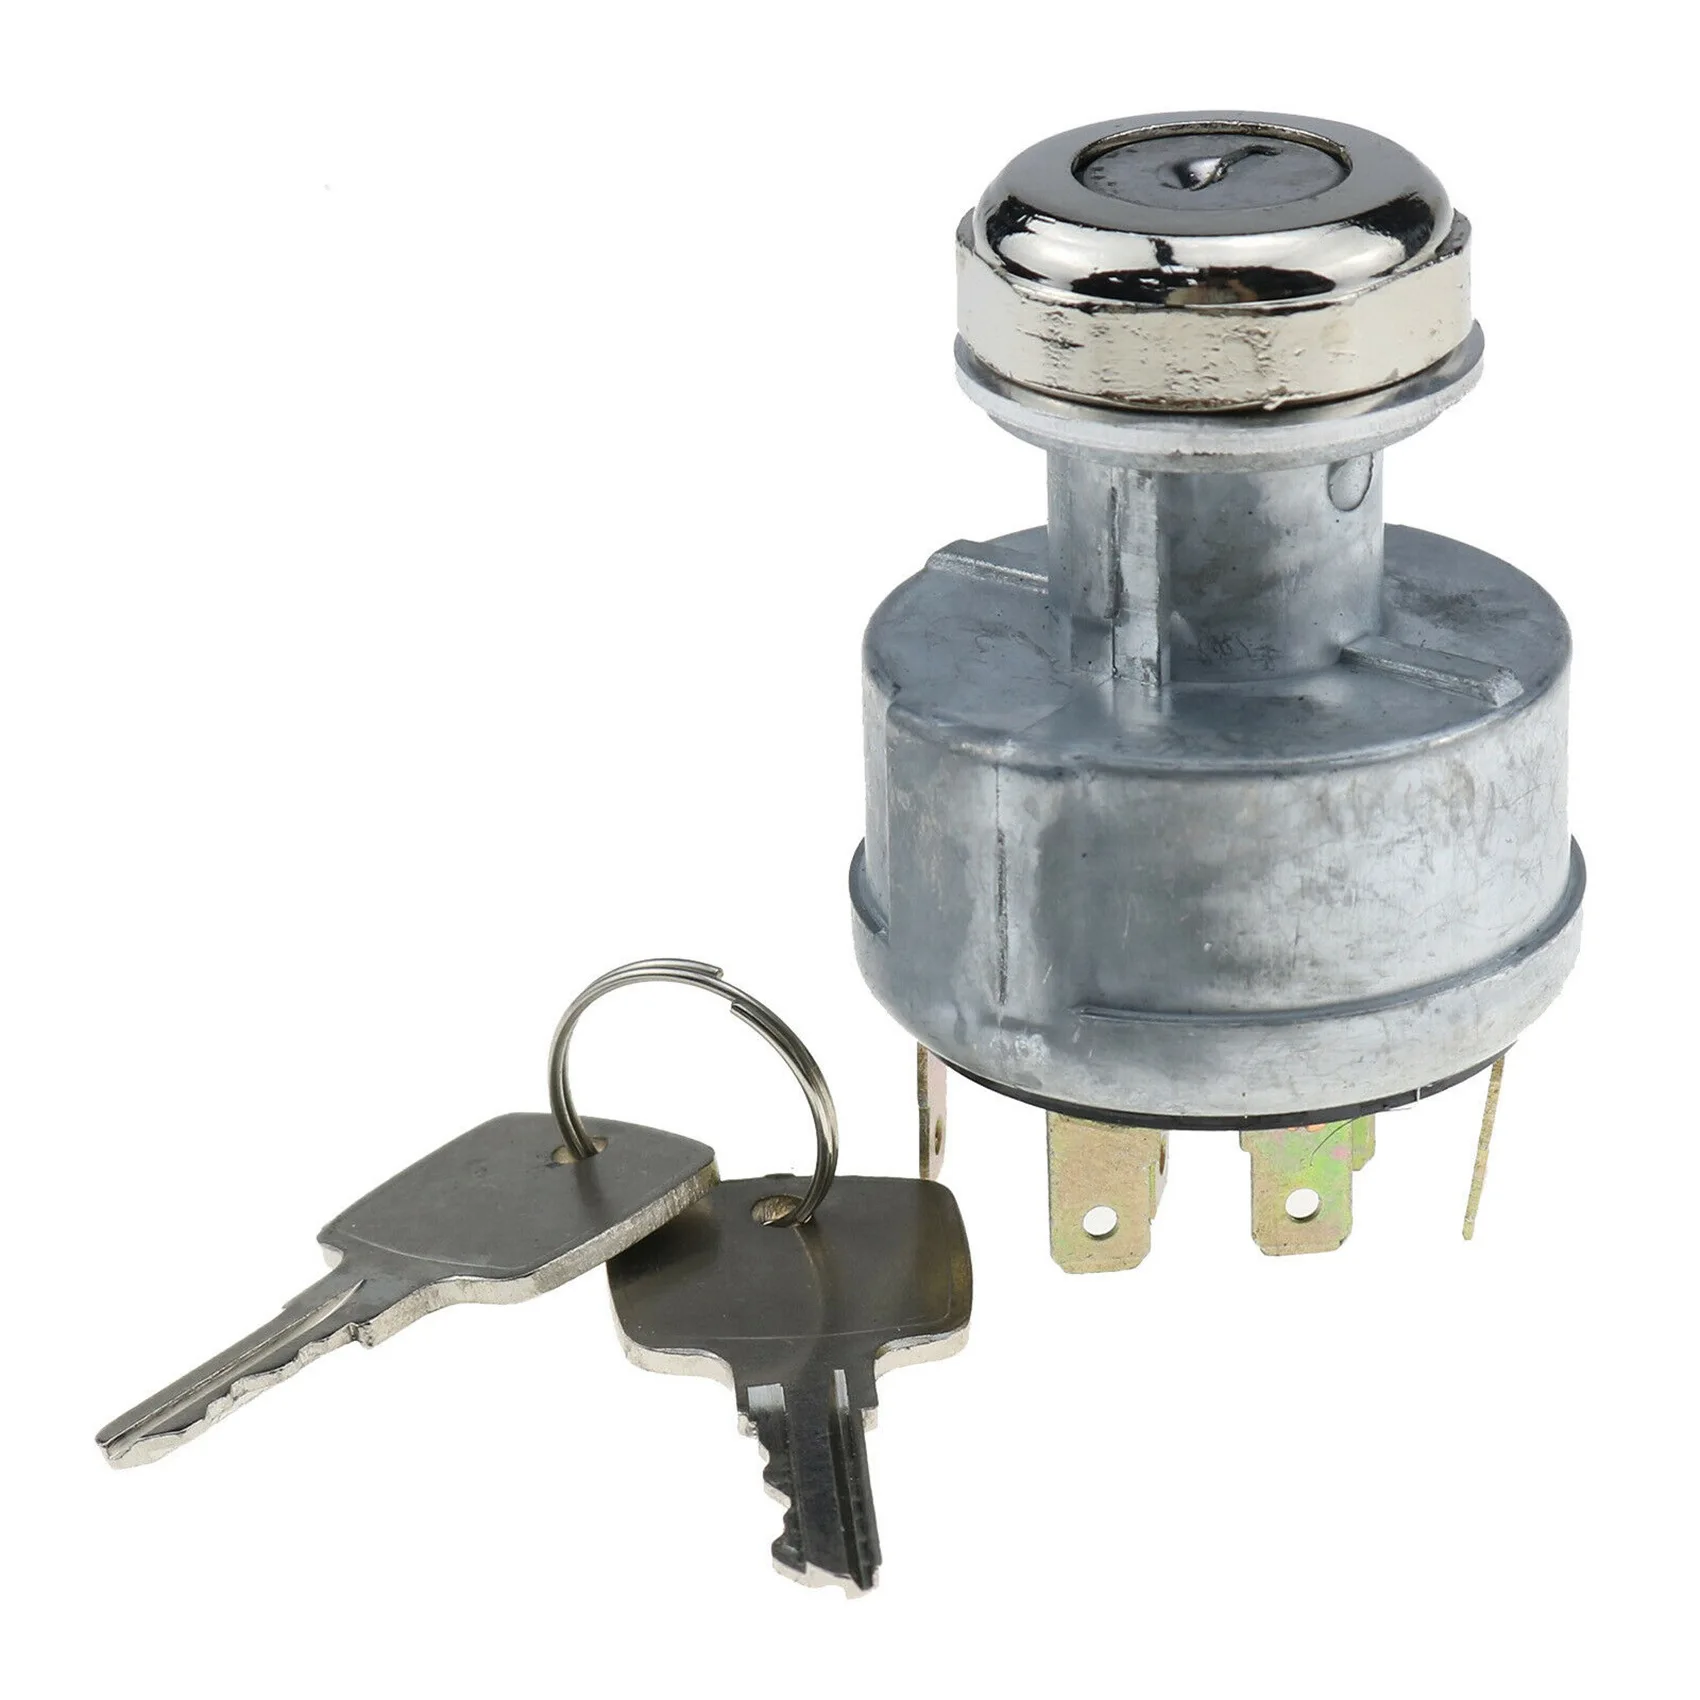 

Новый Переключатель зажигания с ключами AR58126,AT195301 для John Deere 400 401 401B 401C 401D 322 330 332